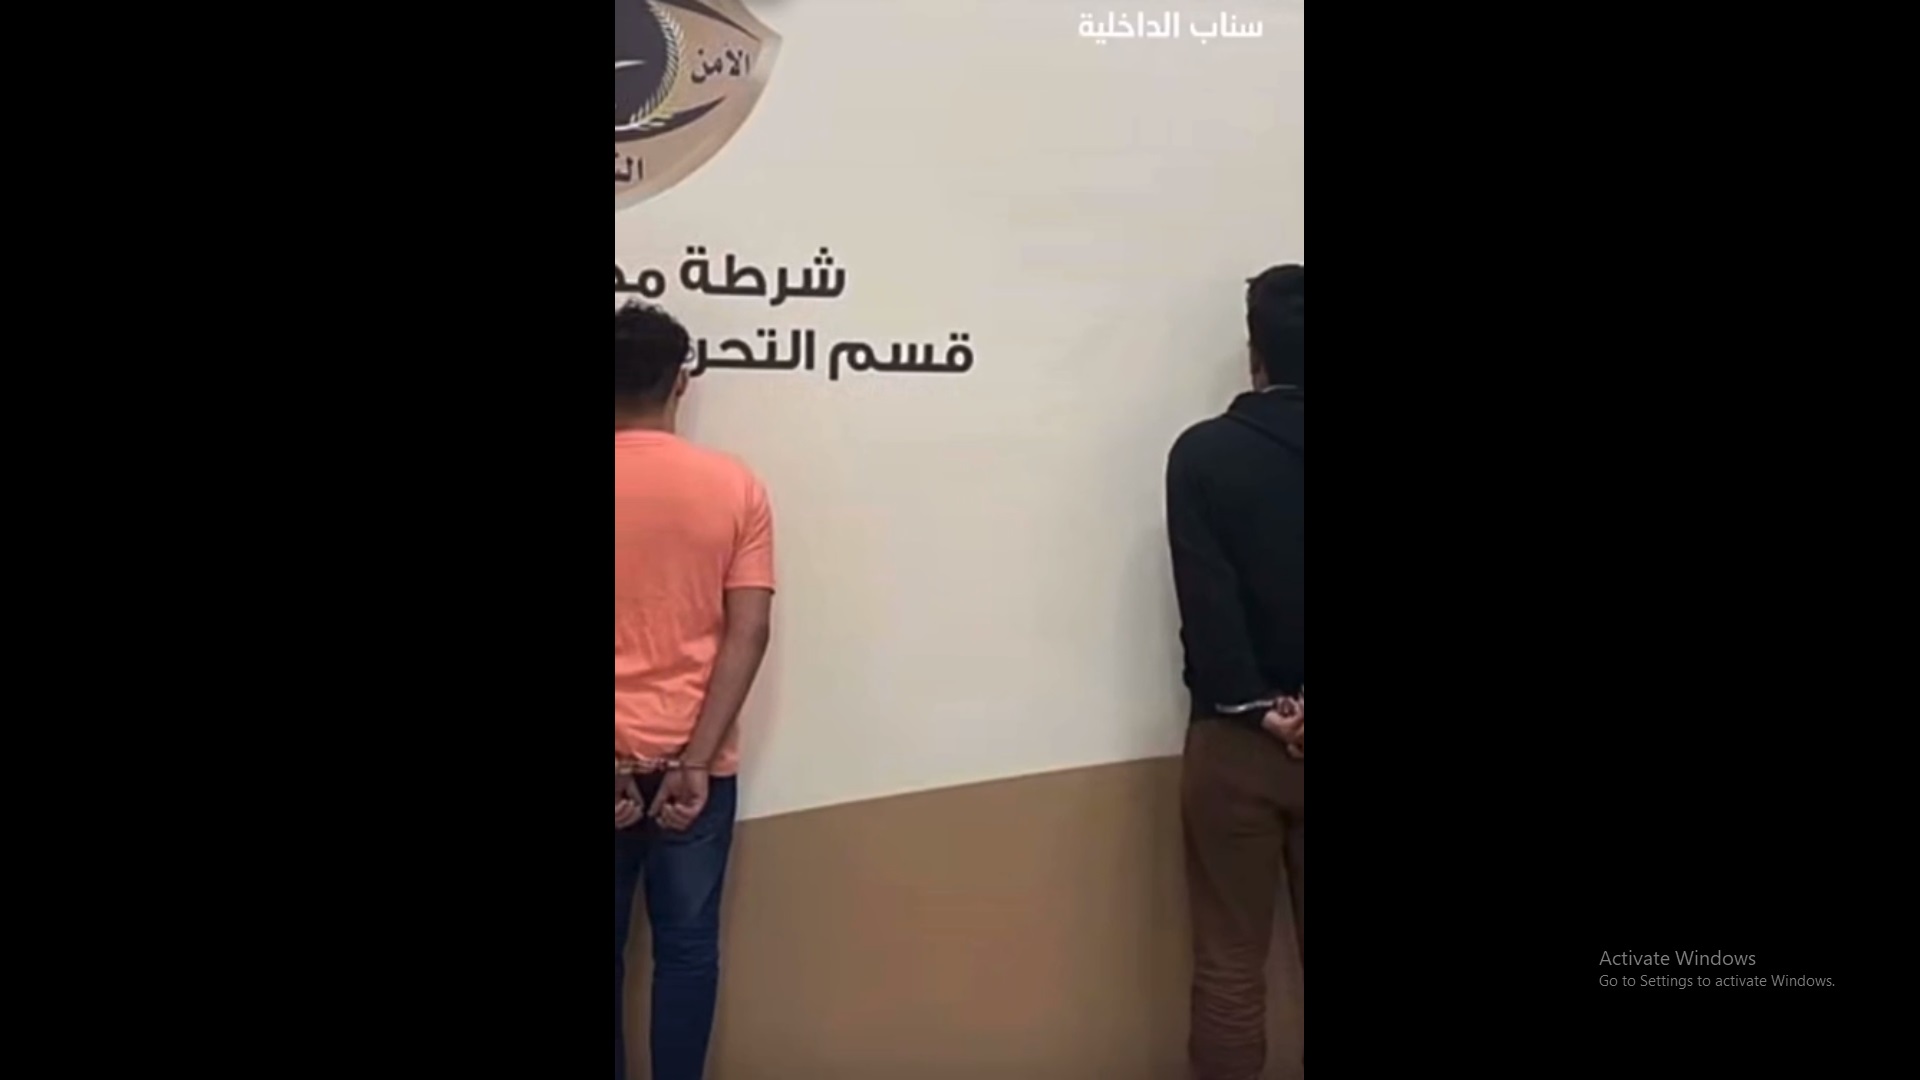 القبض على 4 مخالفين ارتكبوا حوادث سطو على محال في مكة